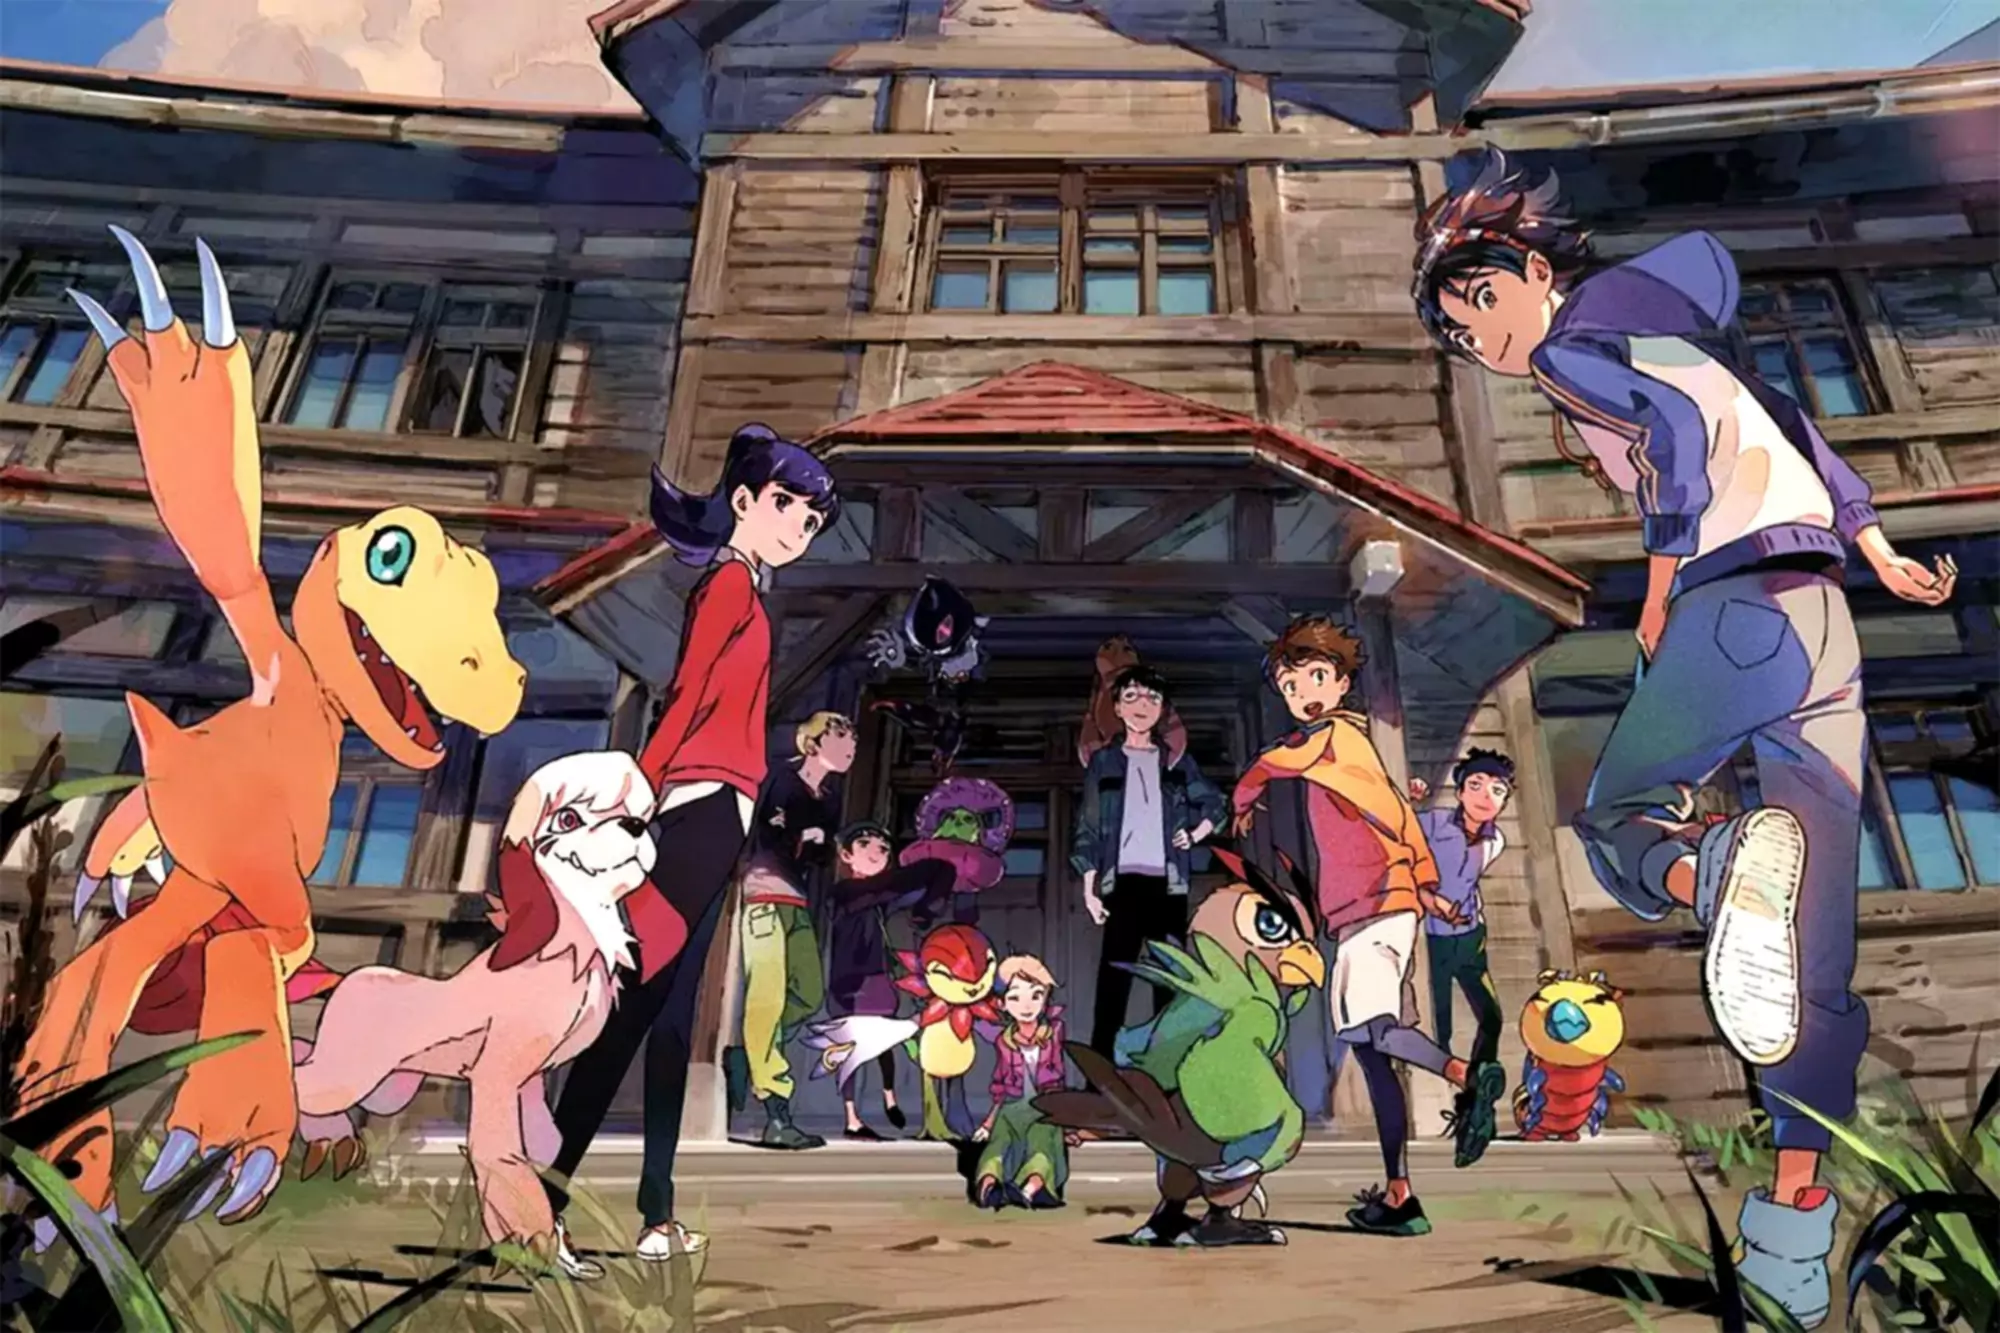 La maquette de Digimon Survive montre des personnages et des monstres Digimon regardant la caméra en courant dans une grande maison.